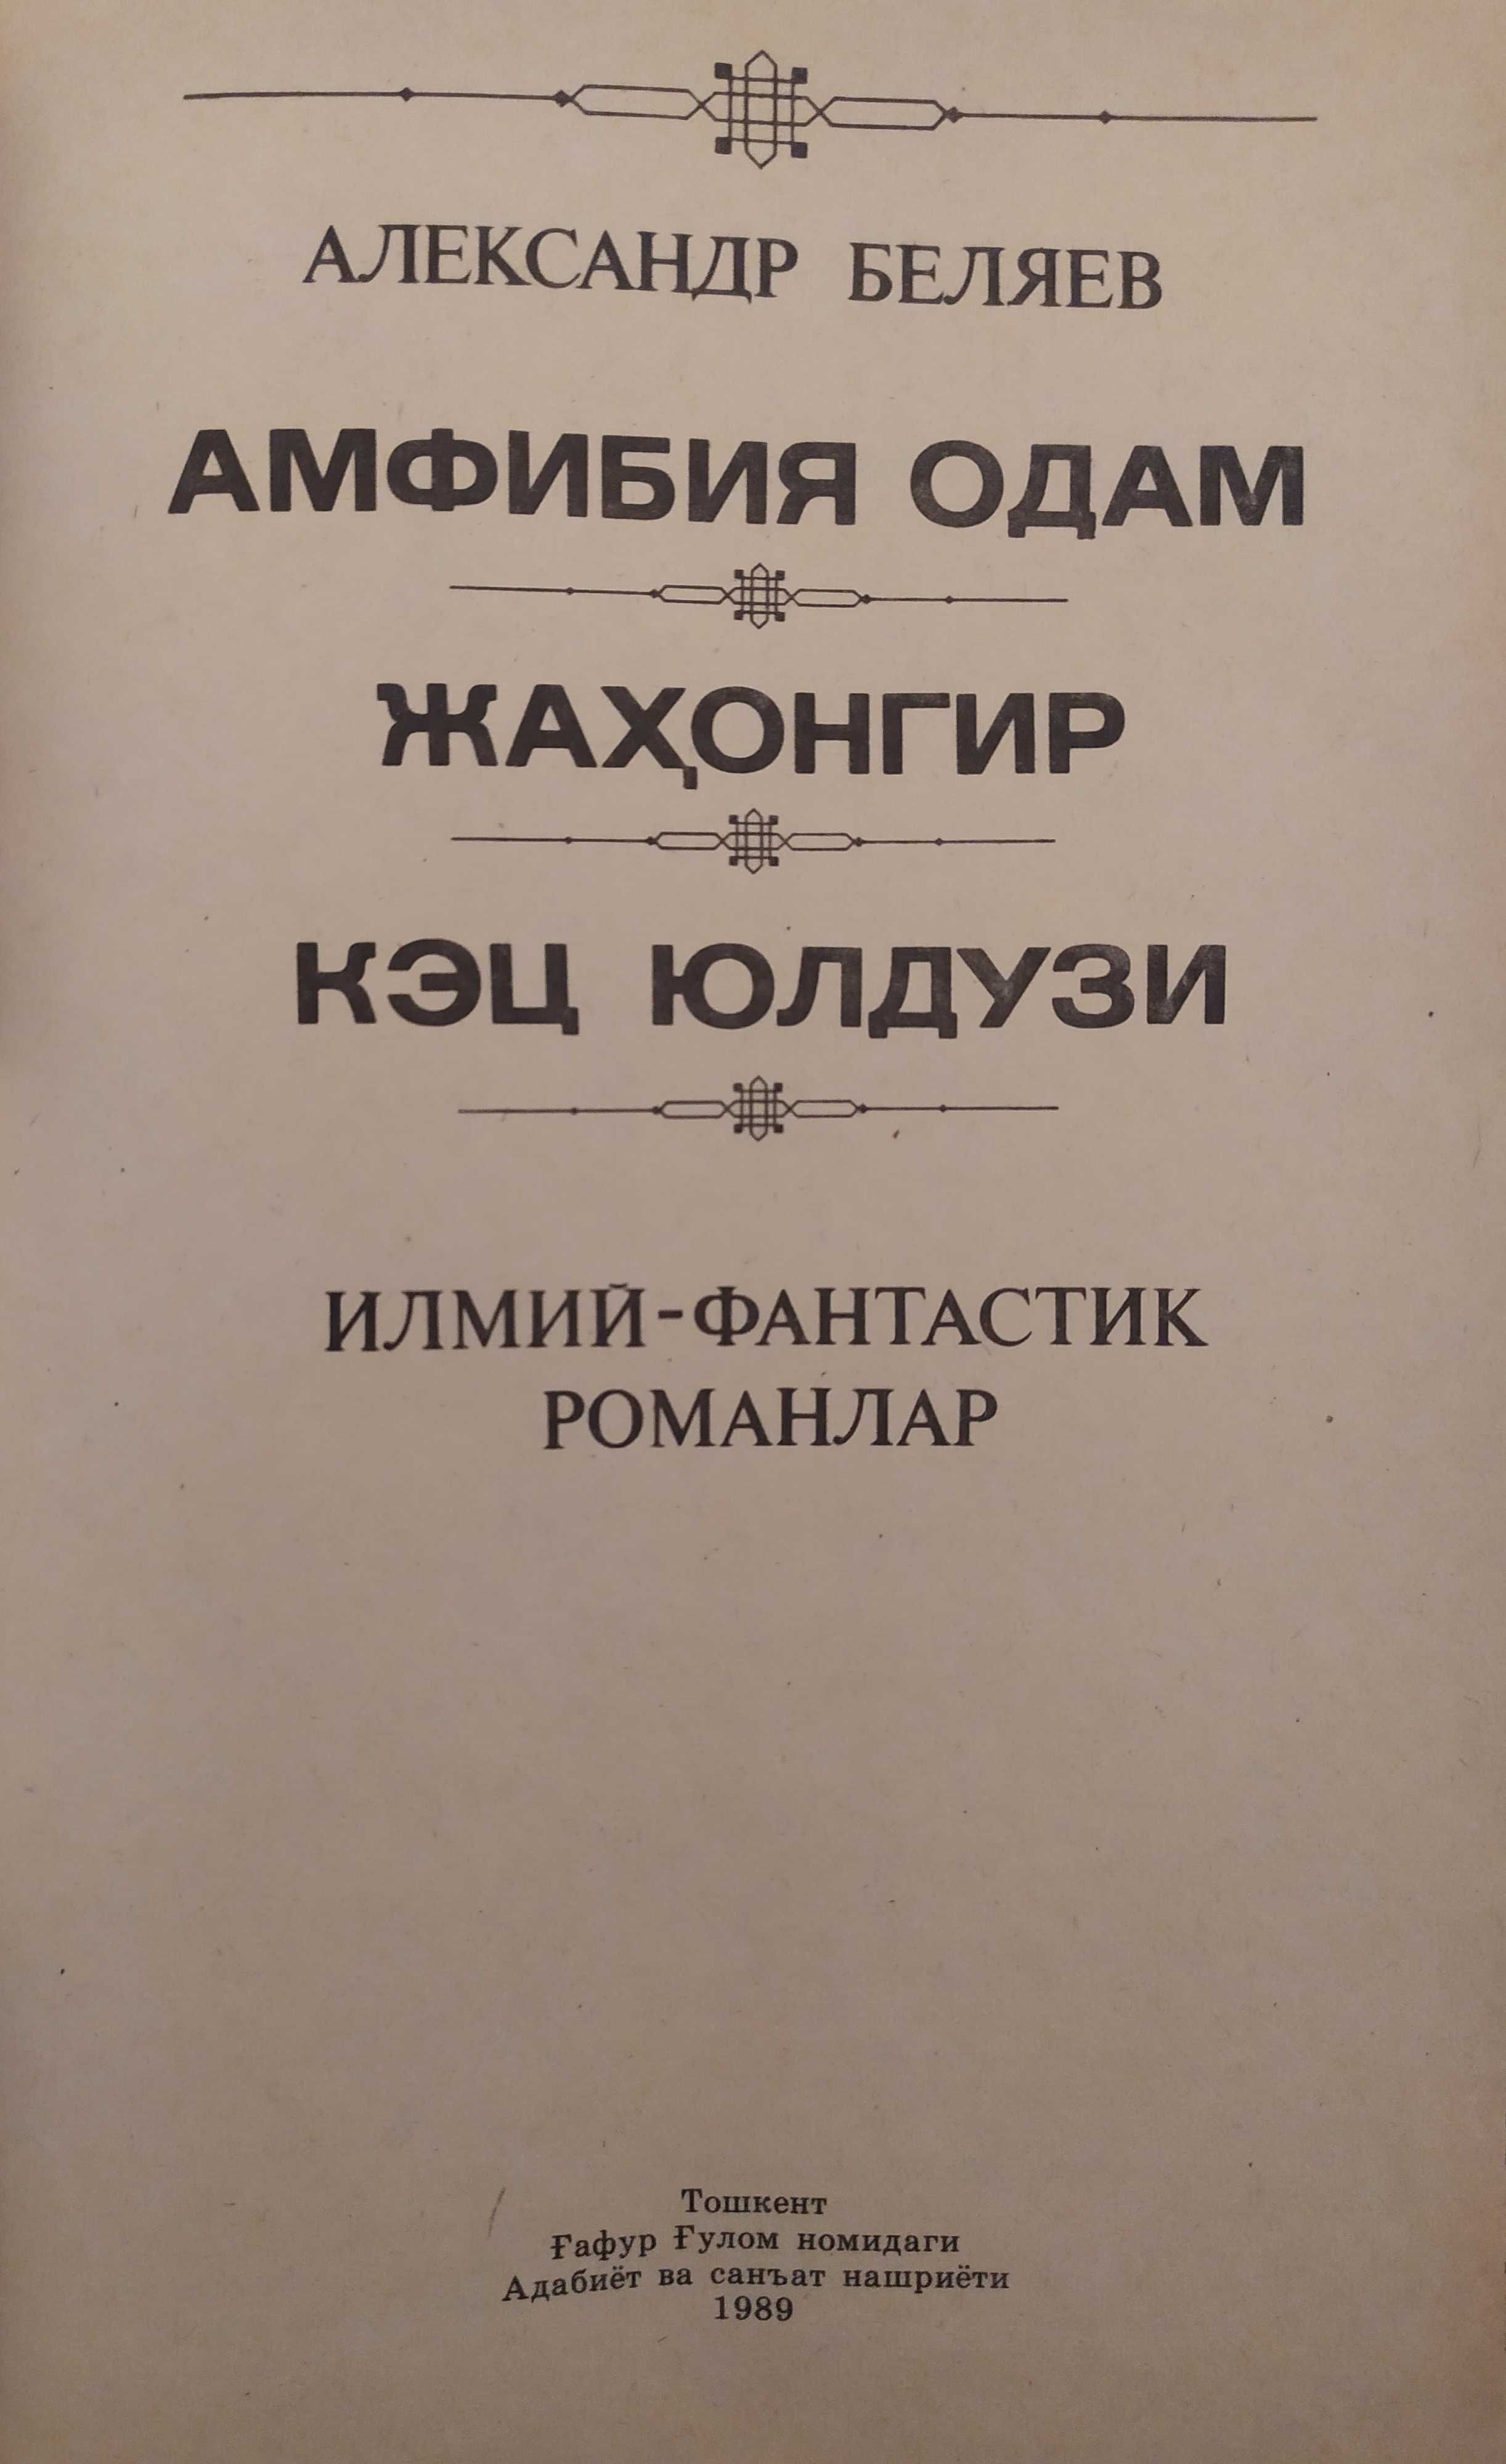 Книги Александра Беляева "Человек-амфибия"